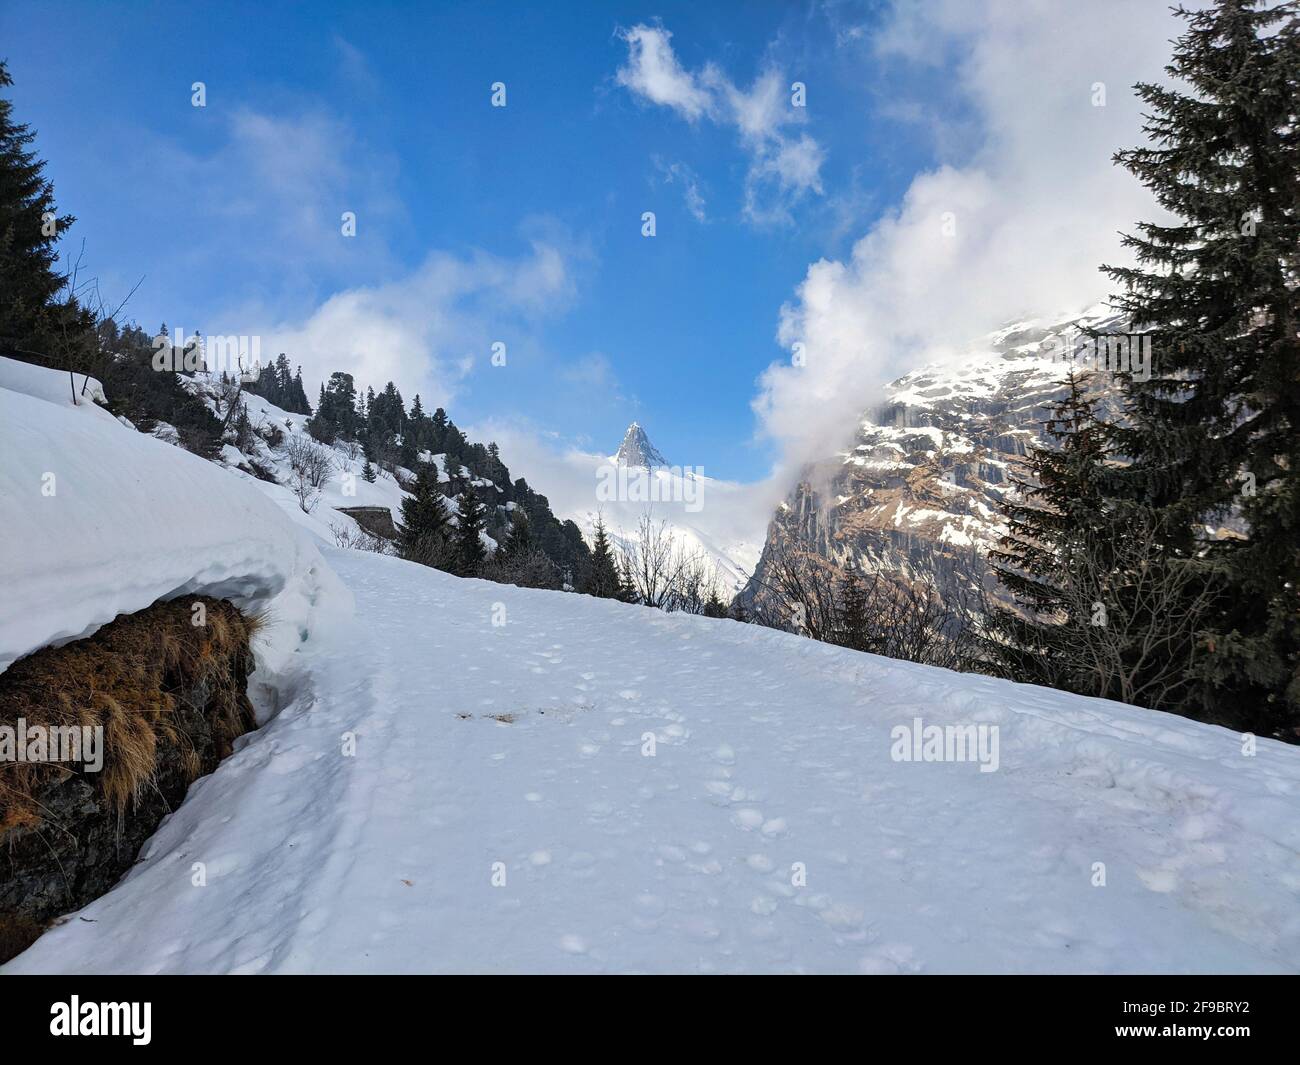 Le Zervreilahorn entre les nuages. Le Bundner matterhorn. Excursion de ski sur le Fanellhorn lors d'une belle journée d'hiver Banque D'Images